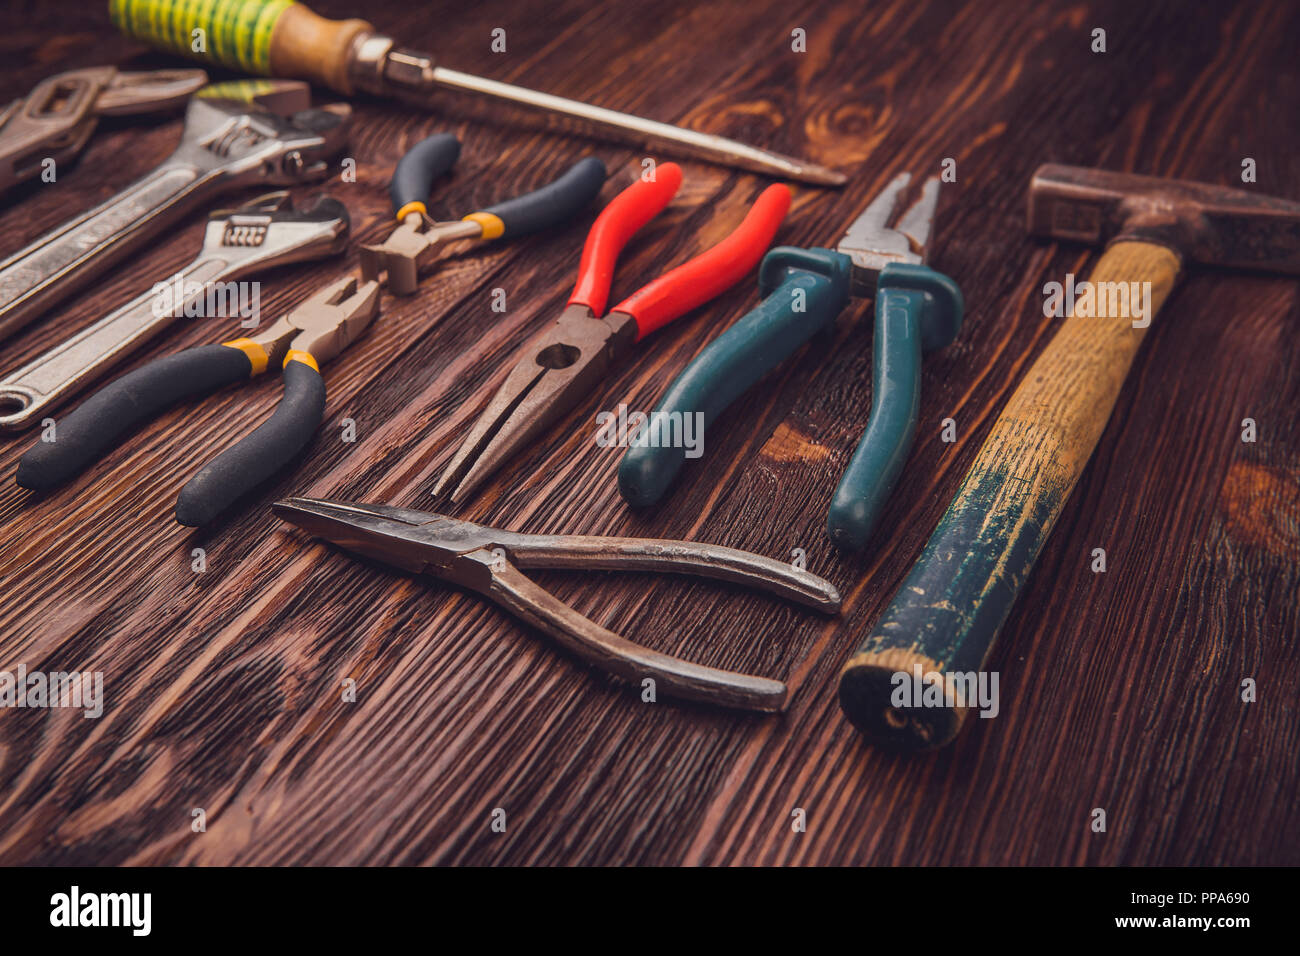 Herramientas de trabajo diferentes sobre una mesa de madera, un martillo, alicates, pinzas, cinceles y llaves Foto de stock